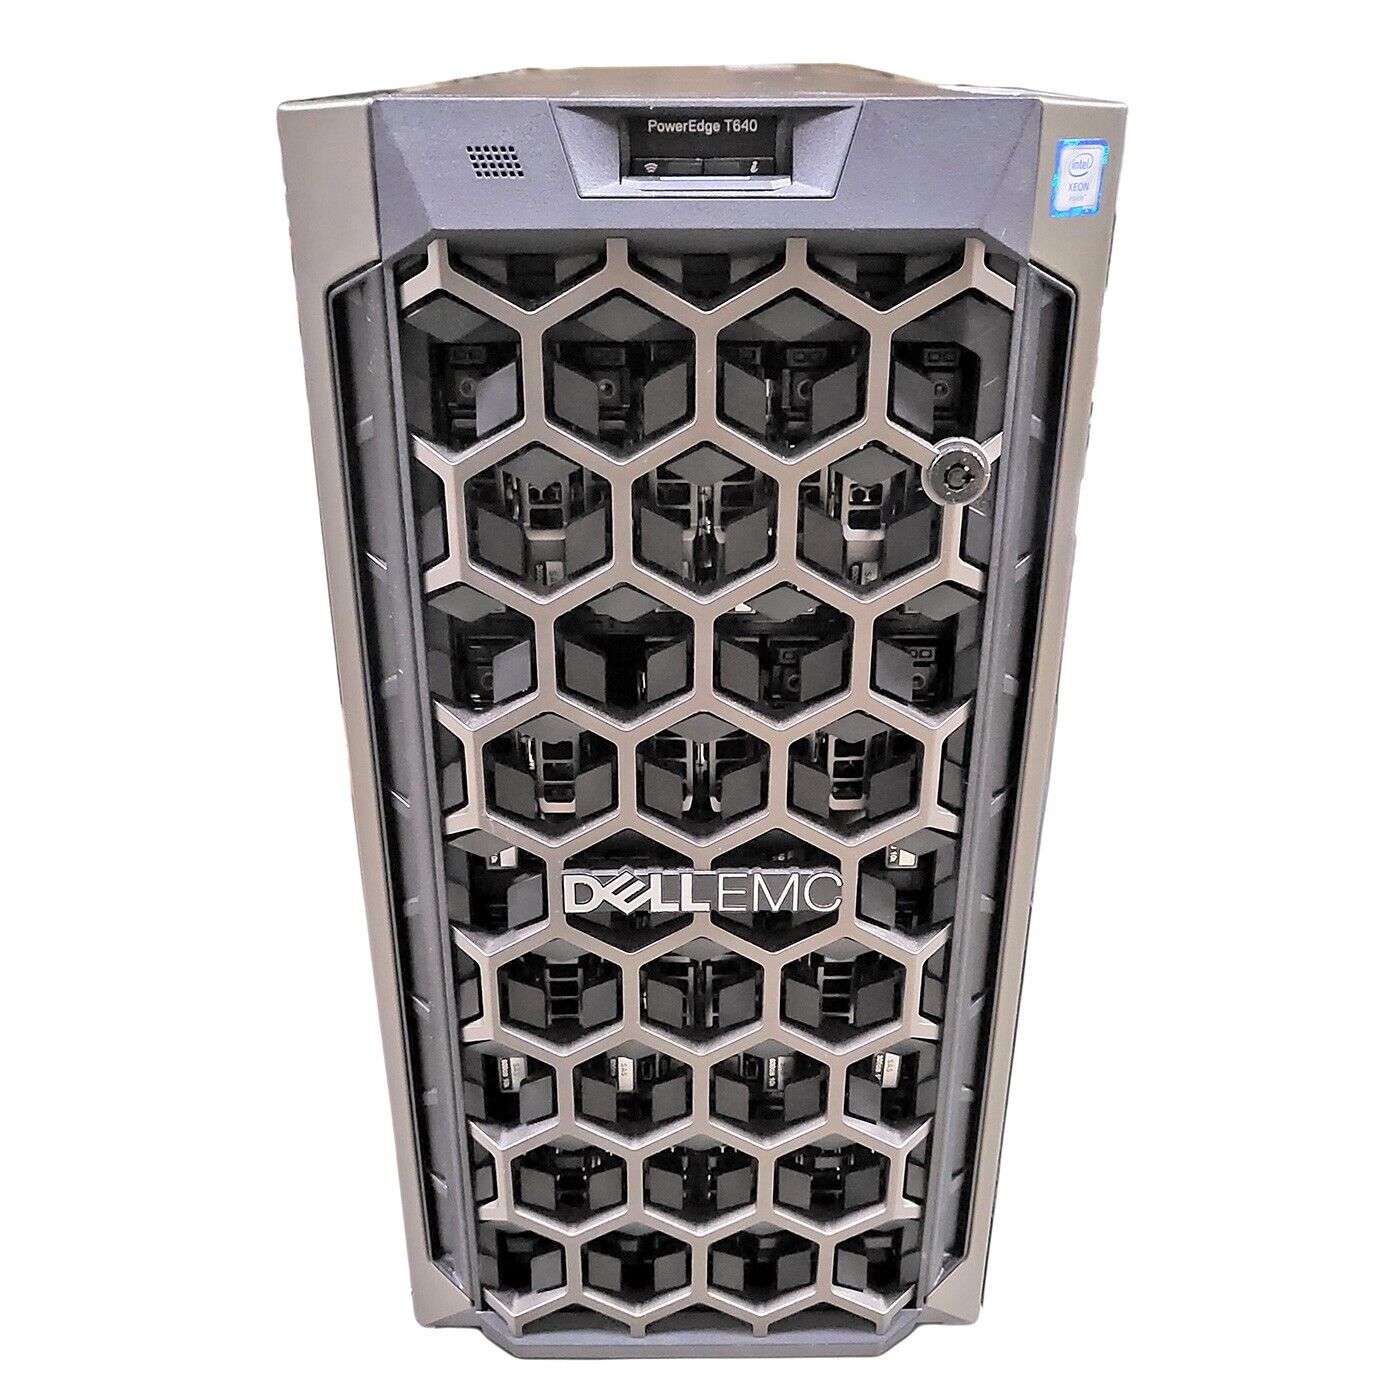 Dell PowerEdge T640 2-2.3 5118 gold, 32gb,32 trays, Perc H730,Idrac9 ent,2x1100w